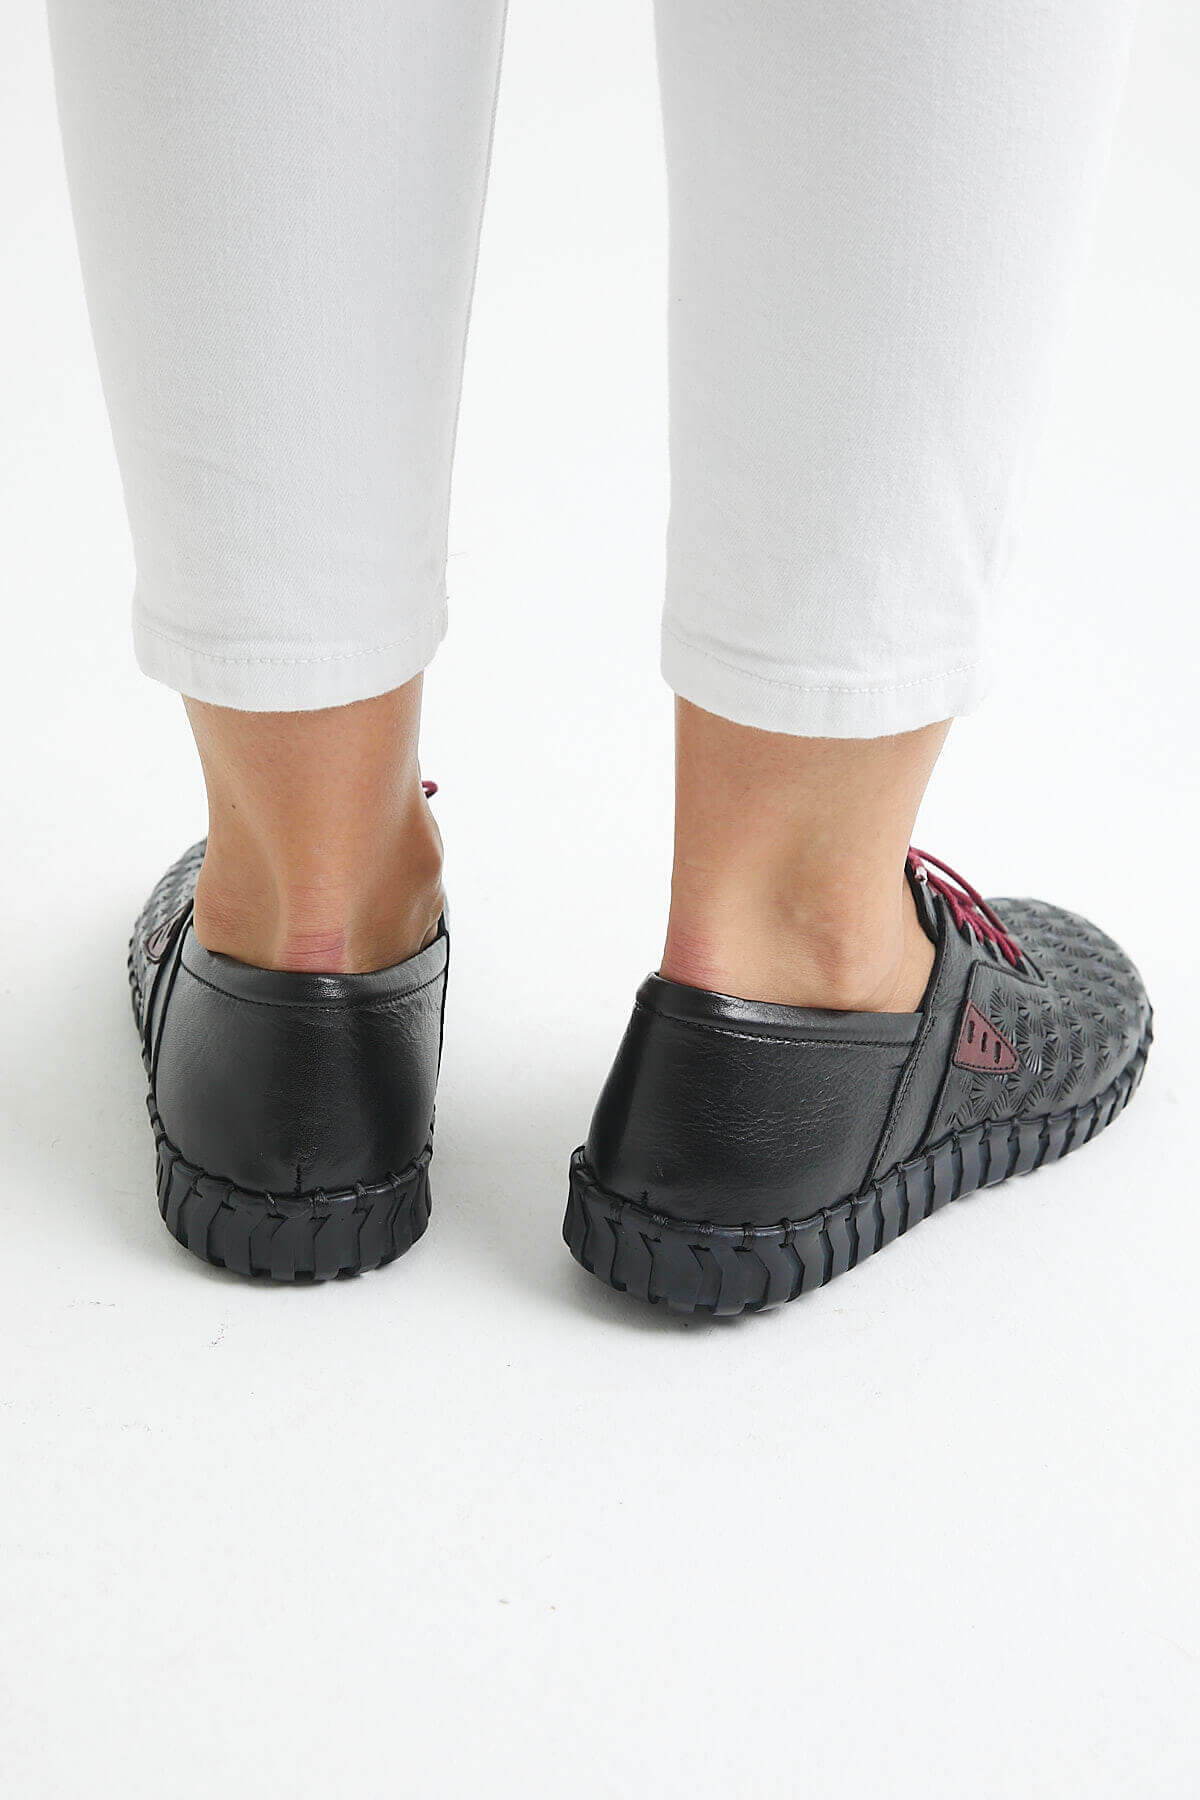 Kadın Comfort Ayakkabı Siyah 2010705Y - Thumbnail